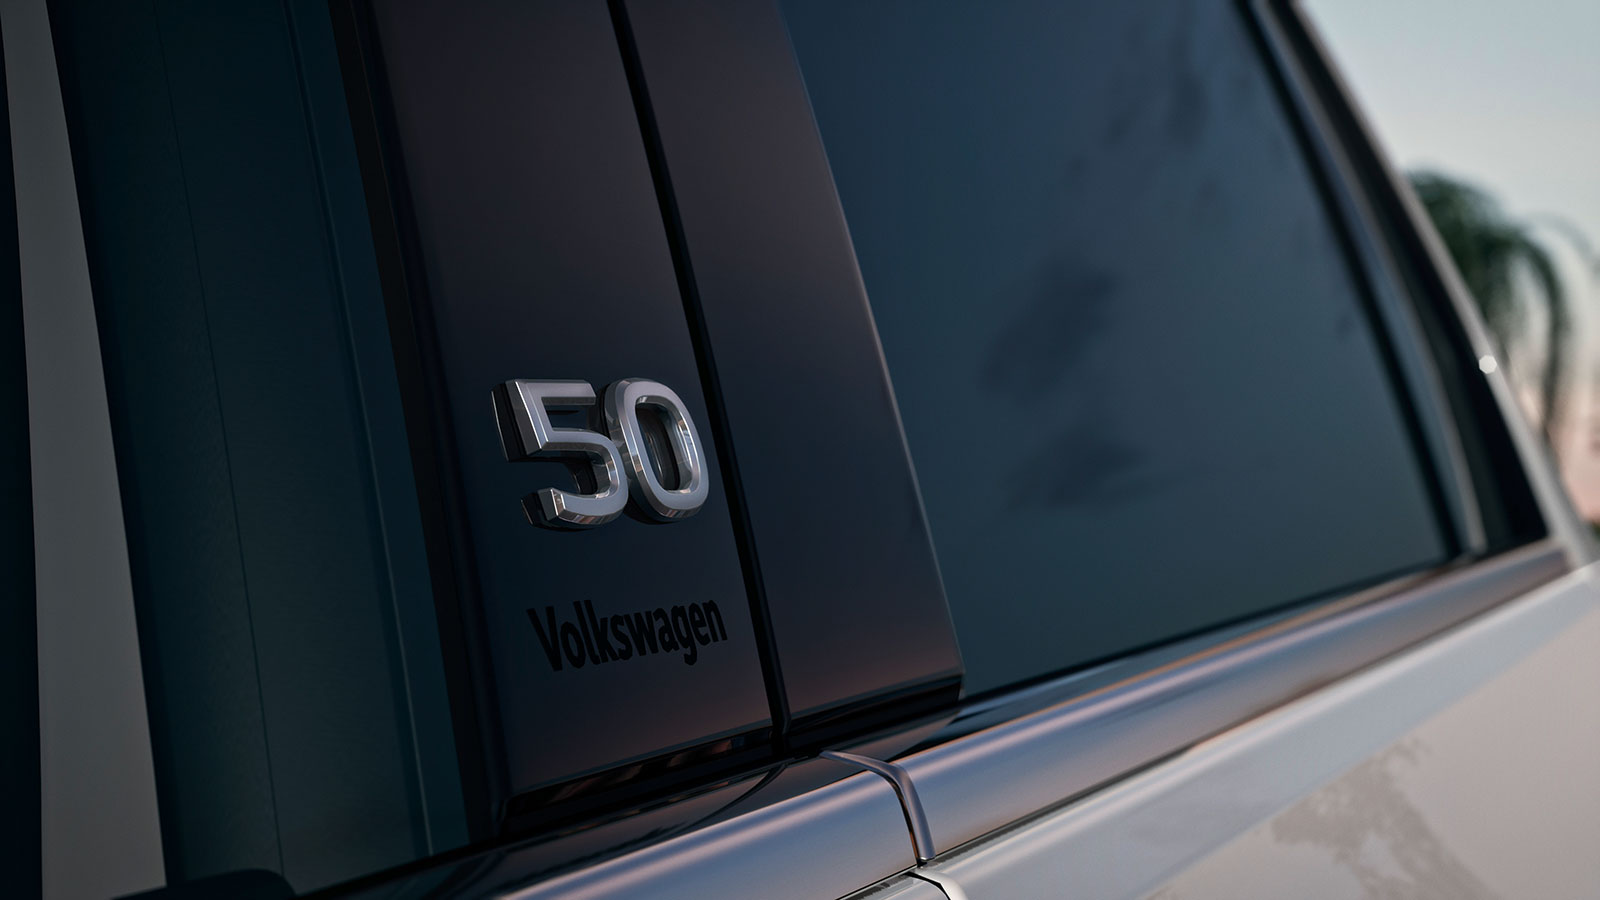 Ευρωπαϊκό λανσάρισμα για το ανανεωμένο VW Golf & σε ειδική έκδοση 50